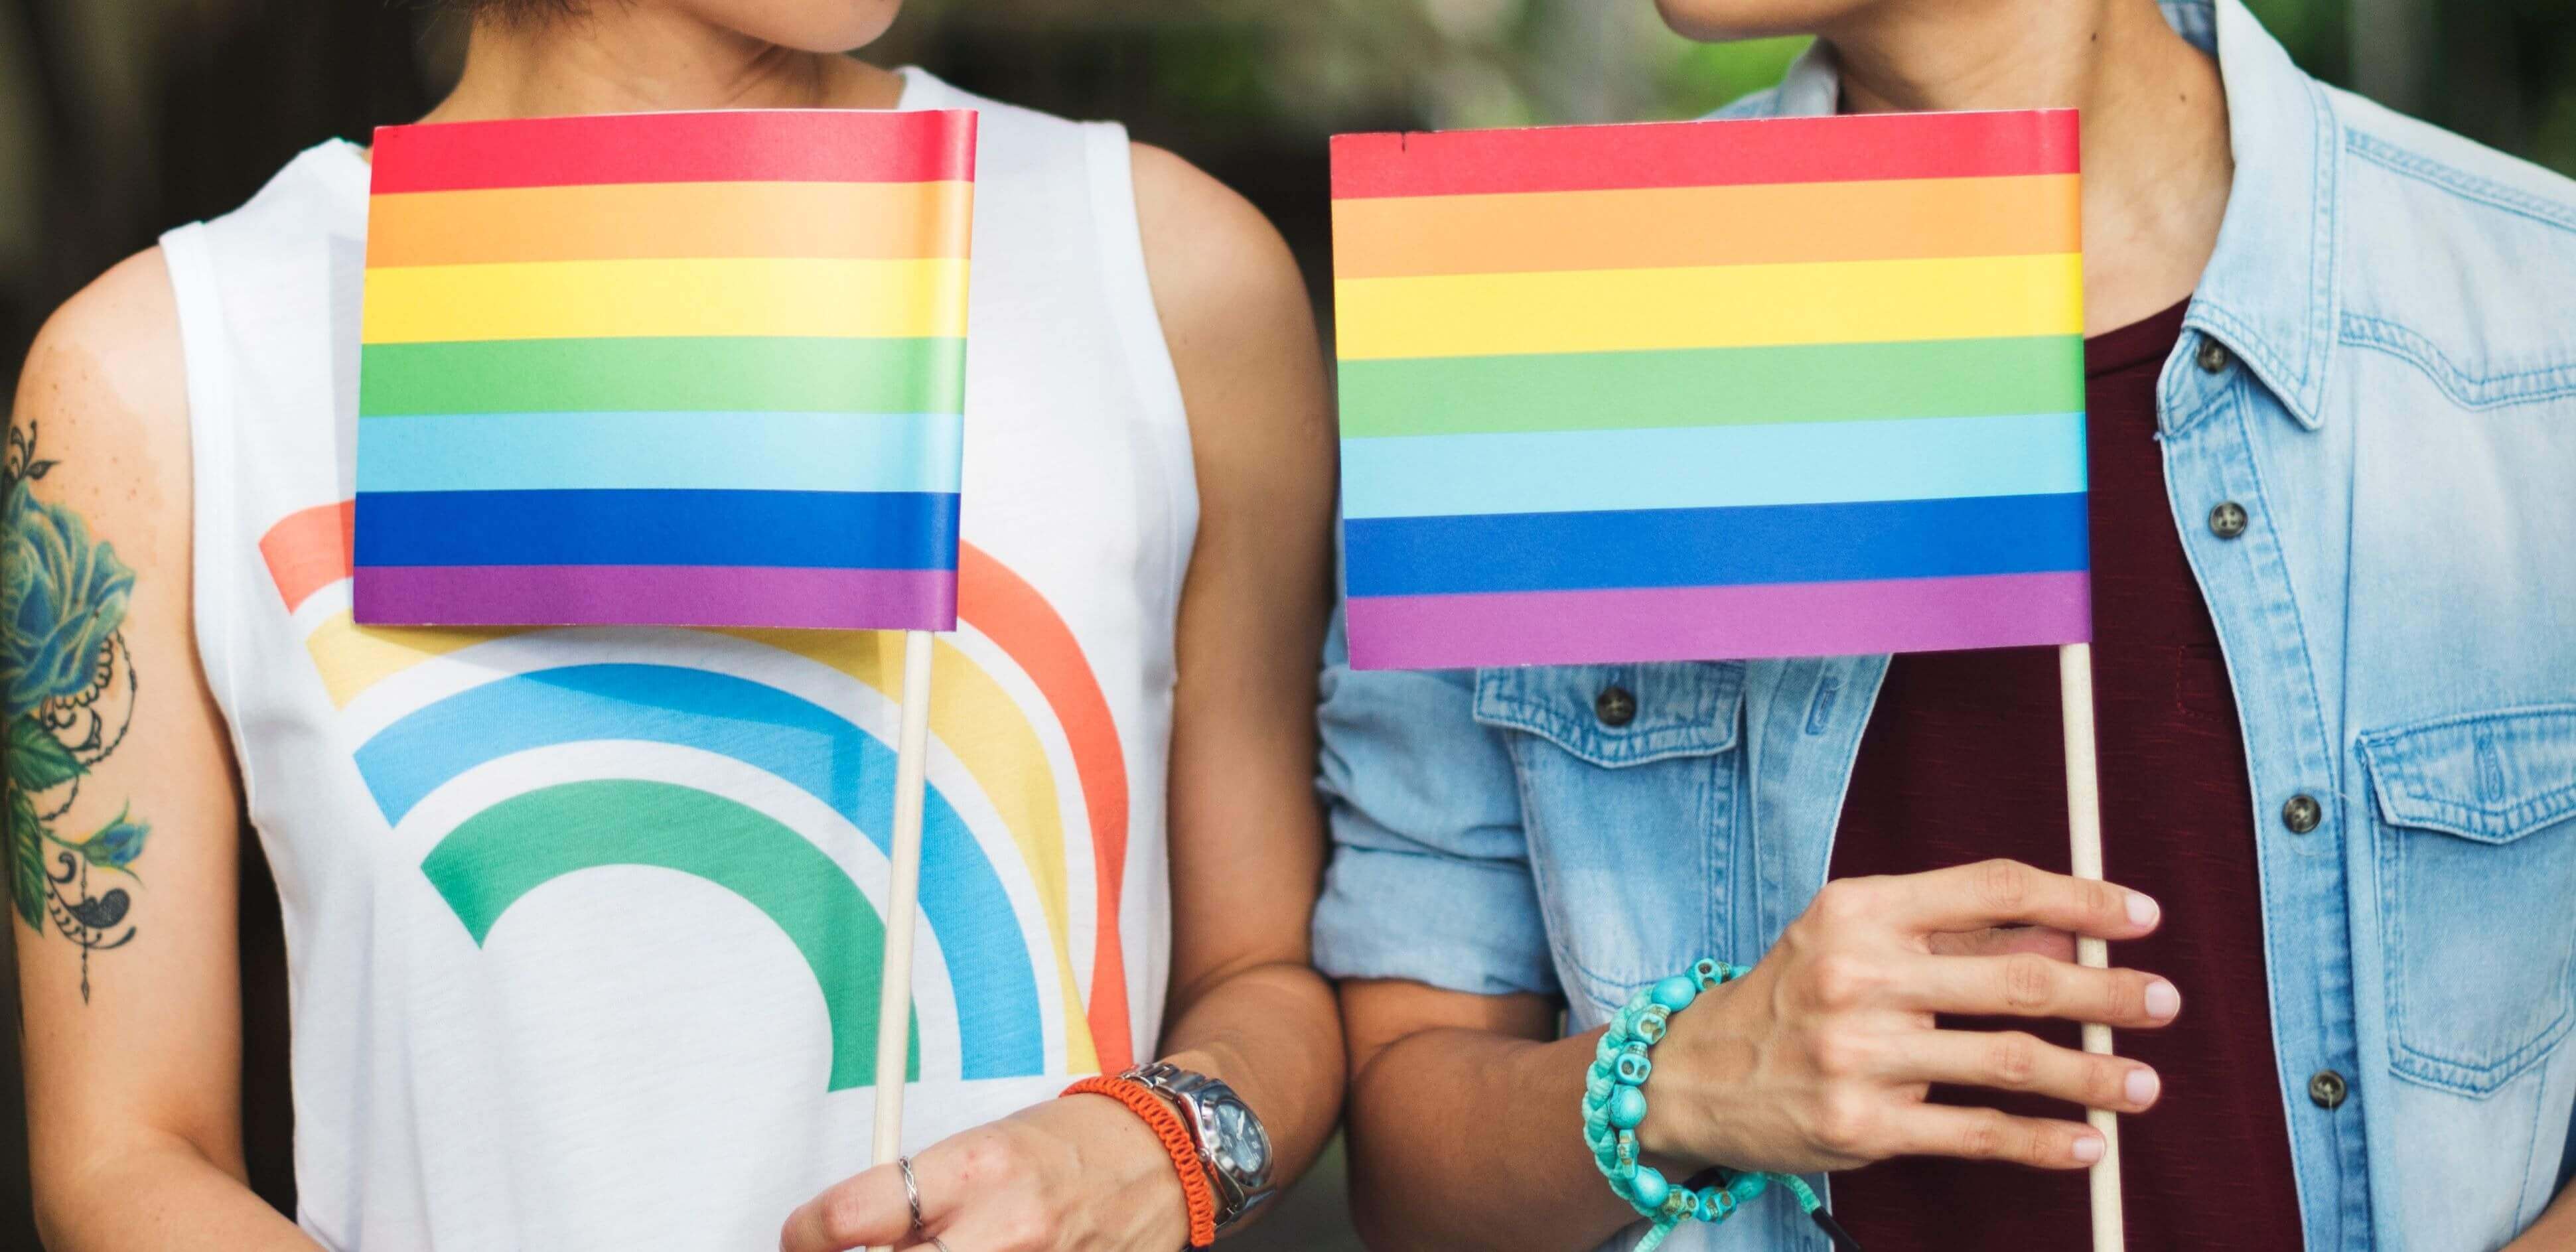 dia internacional contra a homofobia: duas pessoas exibindo uma bandeirinha com as cores LGBTQI+